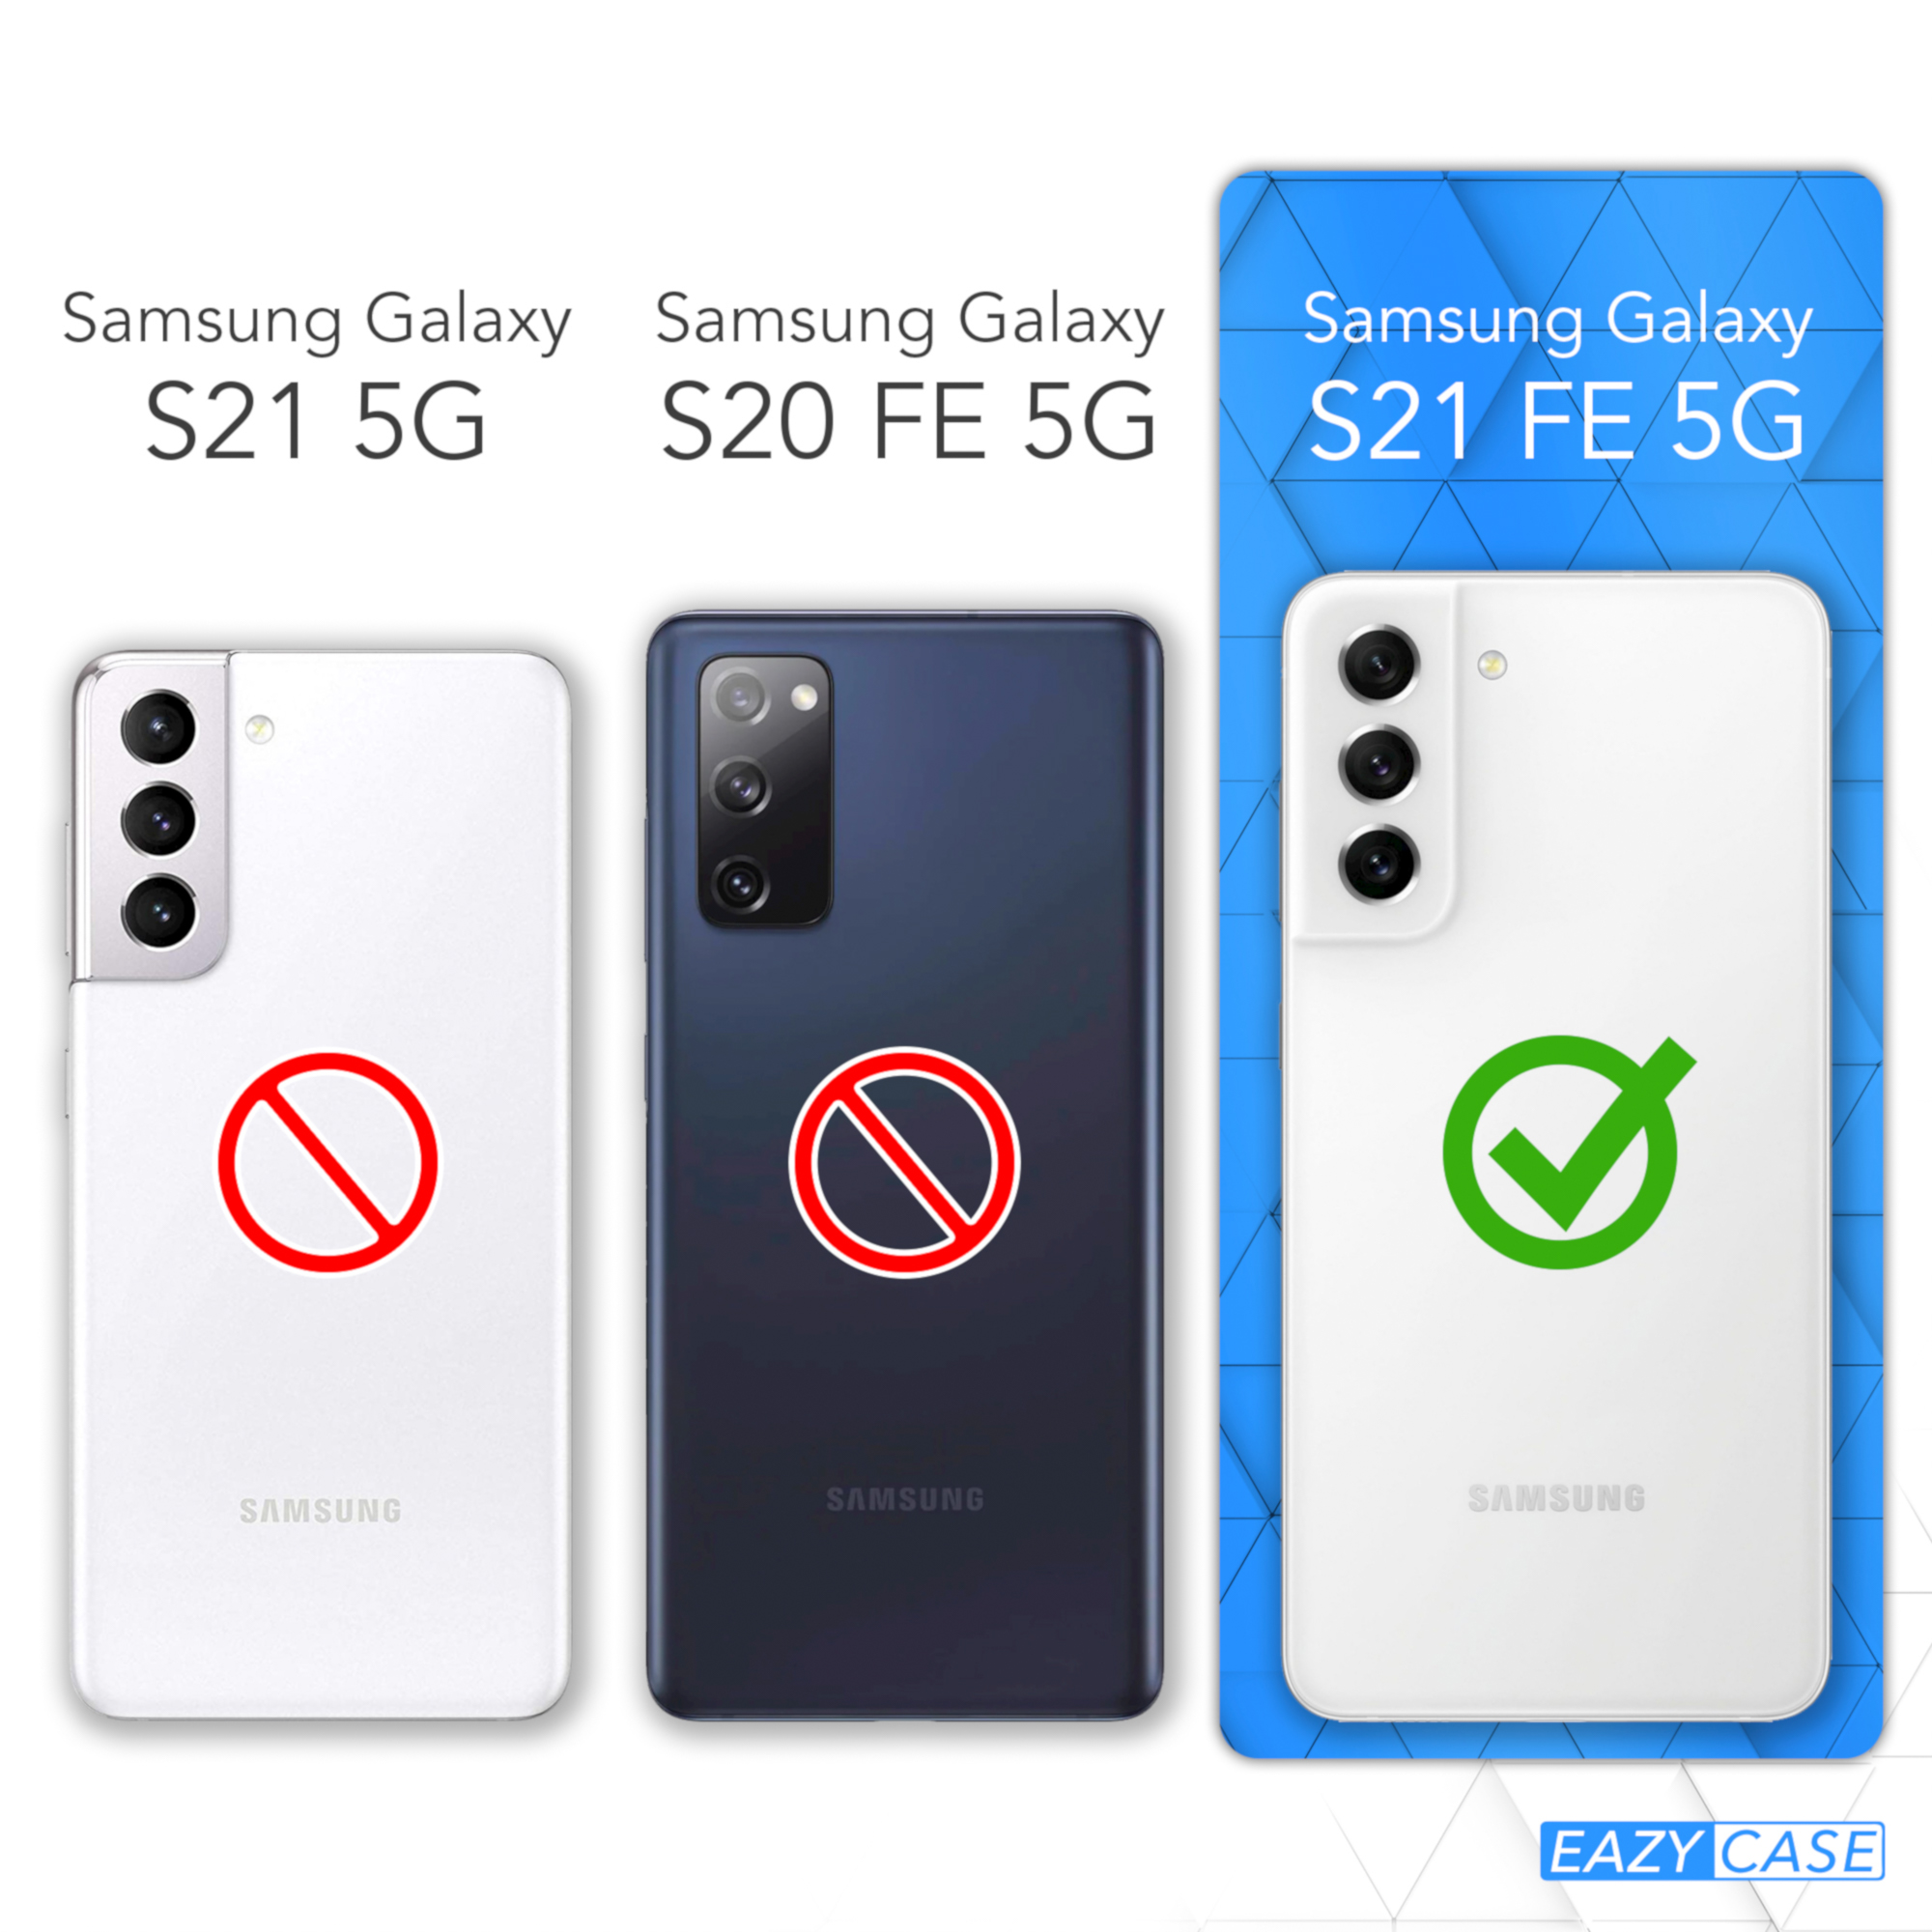 CASE EAZY Samsung, Galaxy Blau Backcover, Nachtblau Premium / 5G, FE Silikon Handycase, S21